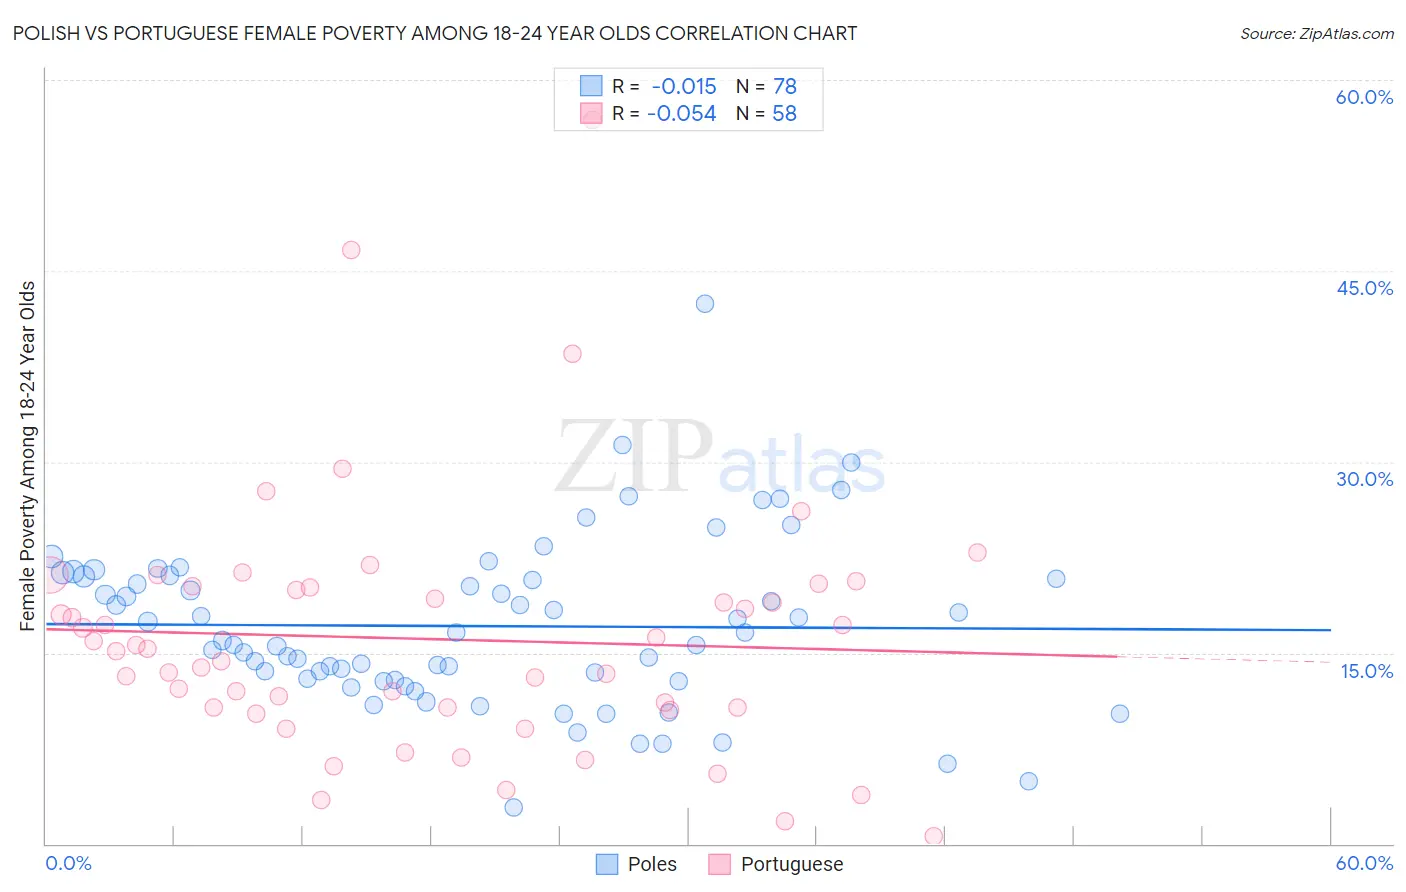 Polish vs Portuguese Female Poverty Among 18-24 Year Olds